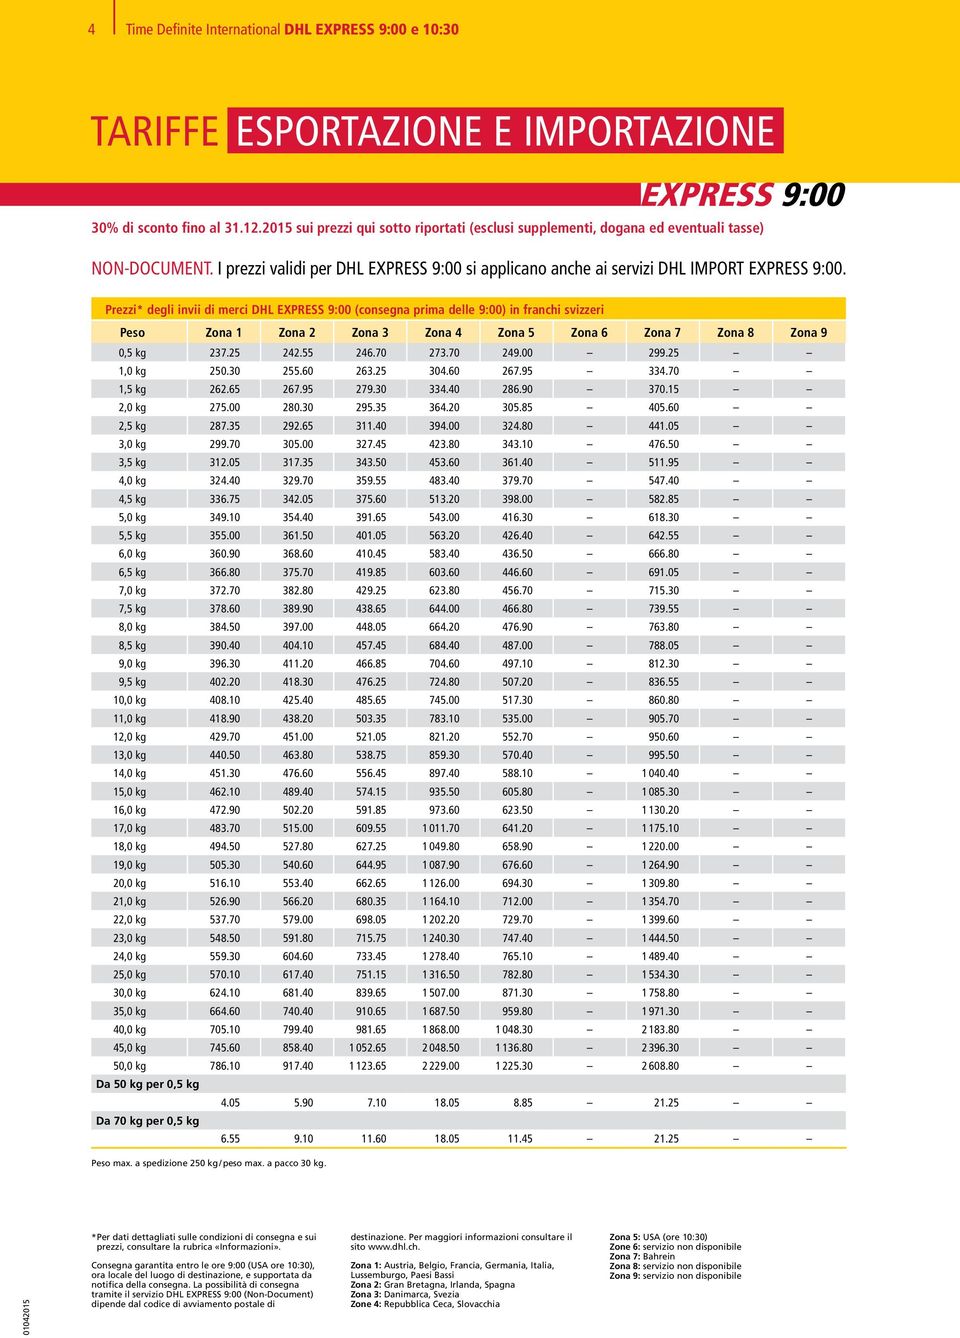 Prezzi* degli invii di merci DHL EXPRESS 9:00 (consegna prima delle 9:00) in franchi svizzeri Peso Zona 1 Zona 2 Zona 3 Zona 4 Zona 5 Zona 6 Zona 7 Zona 8 Zona 9 0,5 kg 237.25 242.55 246.70 273.